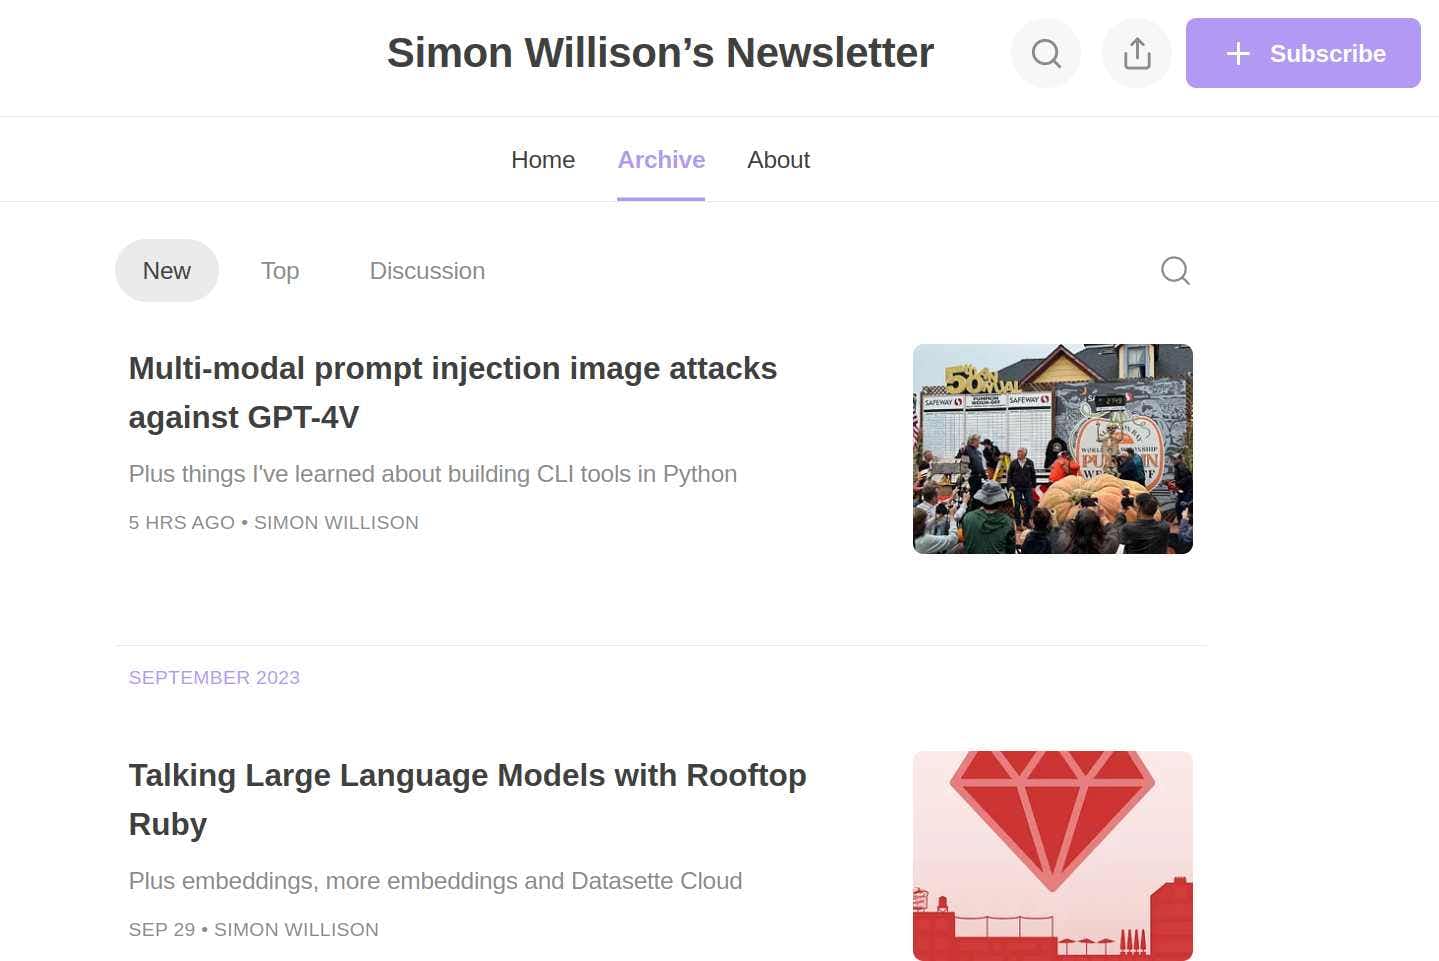 Simon Willison’s Newsletter, a Tech newsletter